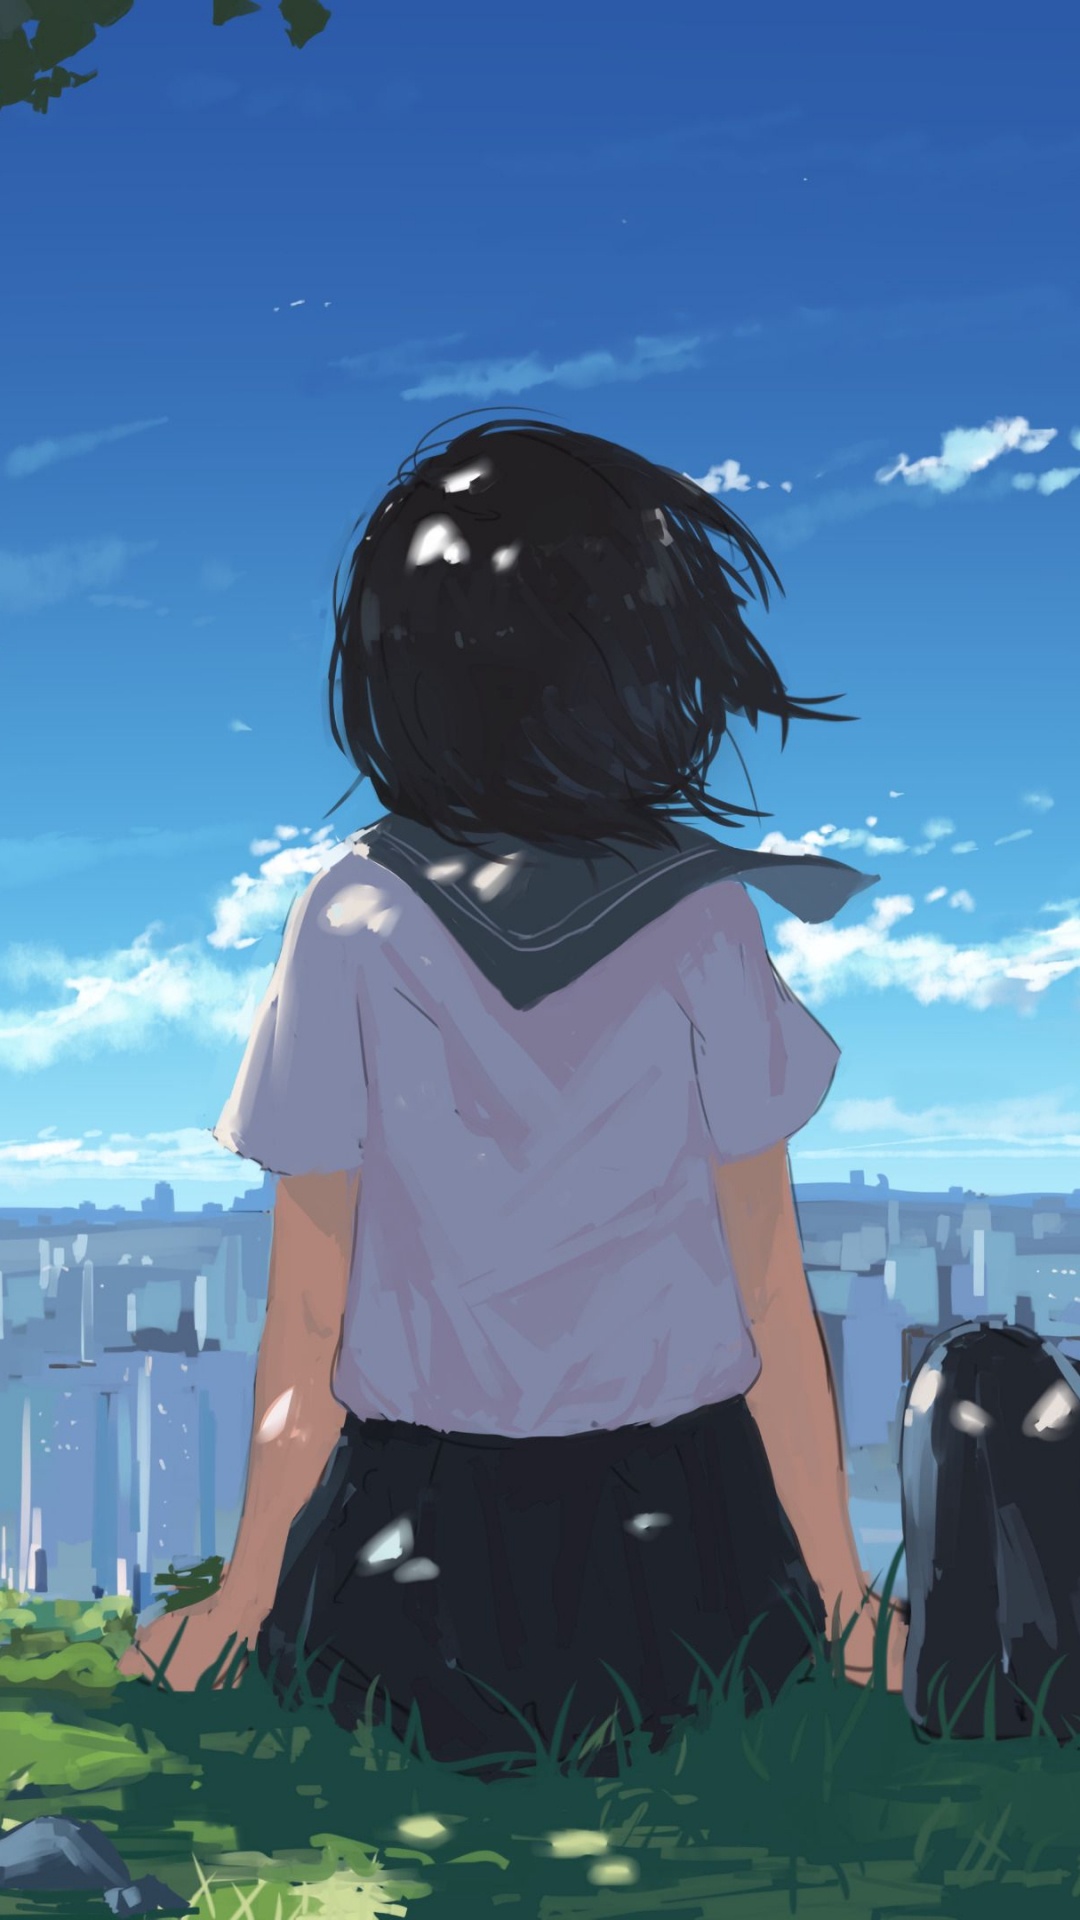 Anime, Anime Girl, Anime Art, Cartoon, Anime Friends - Brazil. Wallpaper in 1080x1920 Resolution